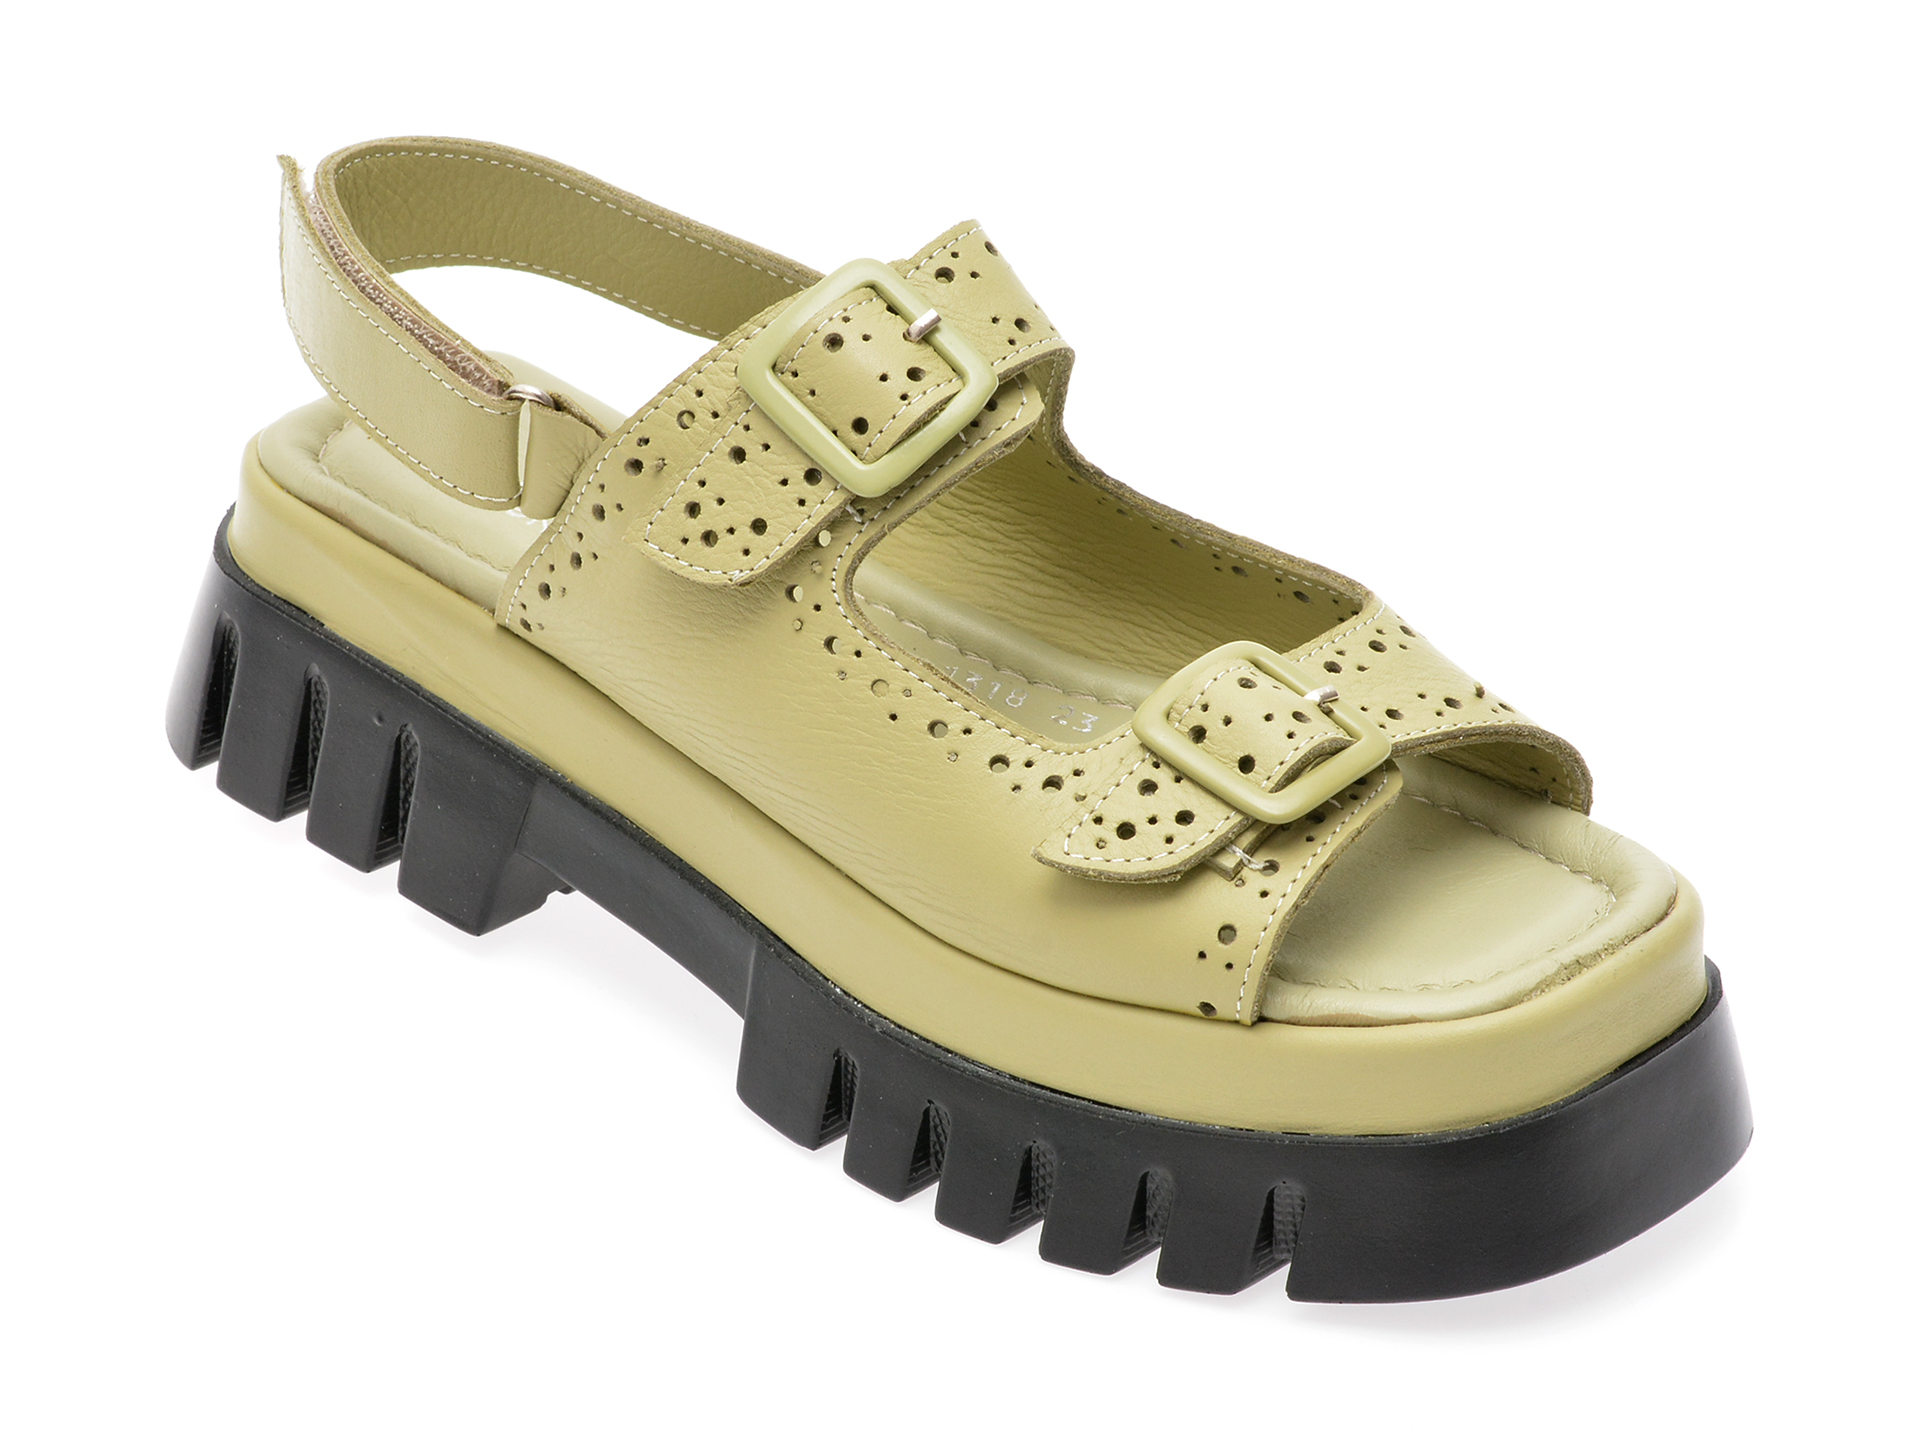 Sandale FERA DONNA verzi, 13189, din piele naturala /femei/sandale